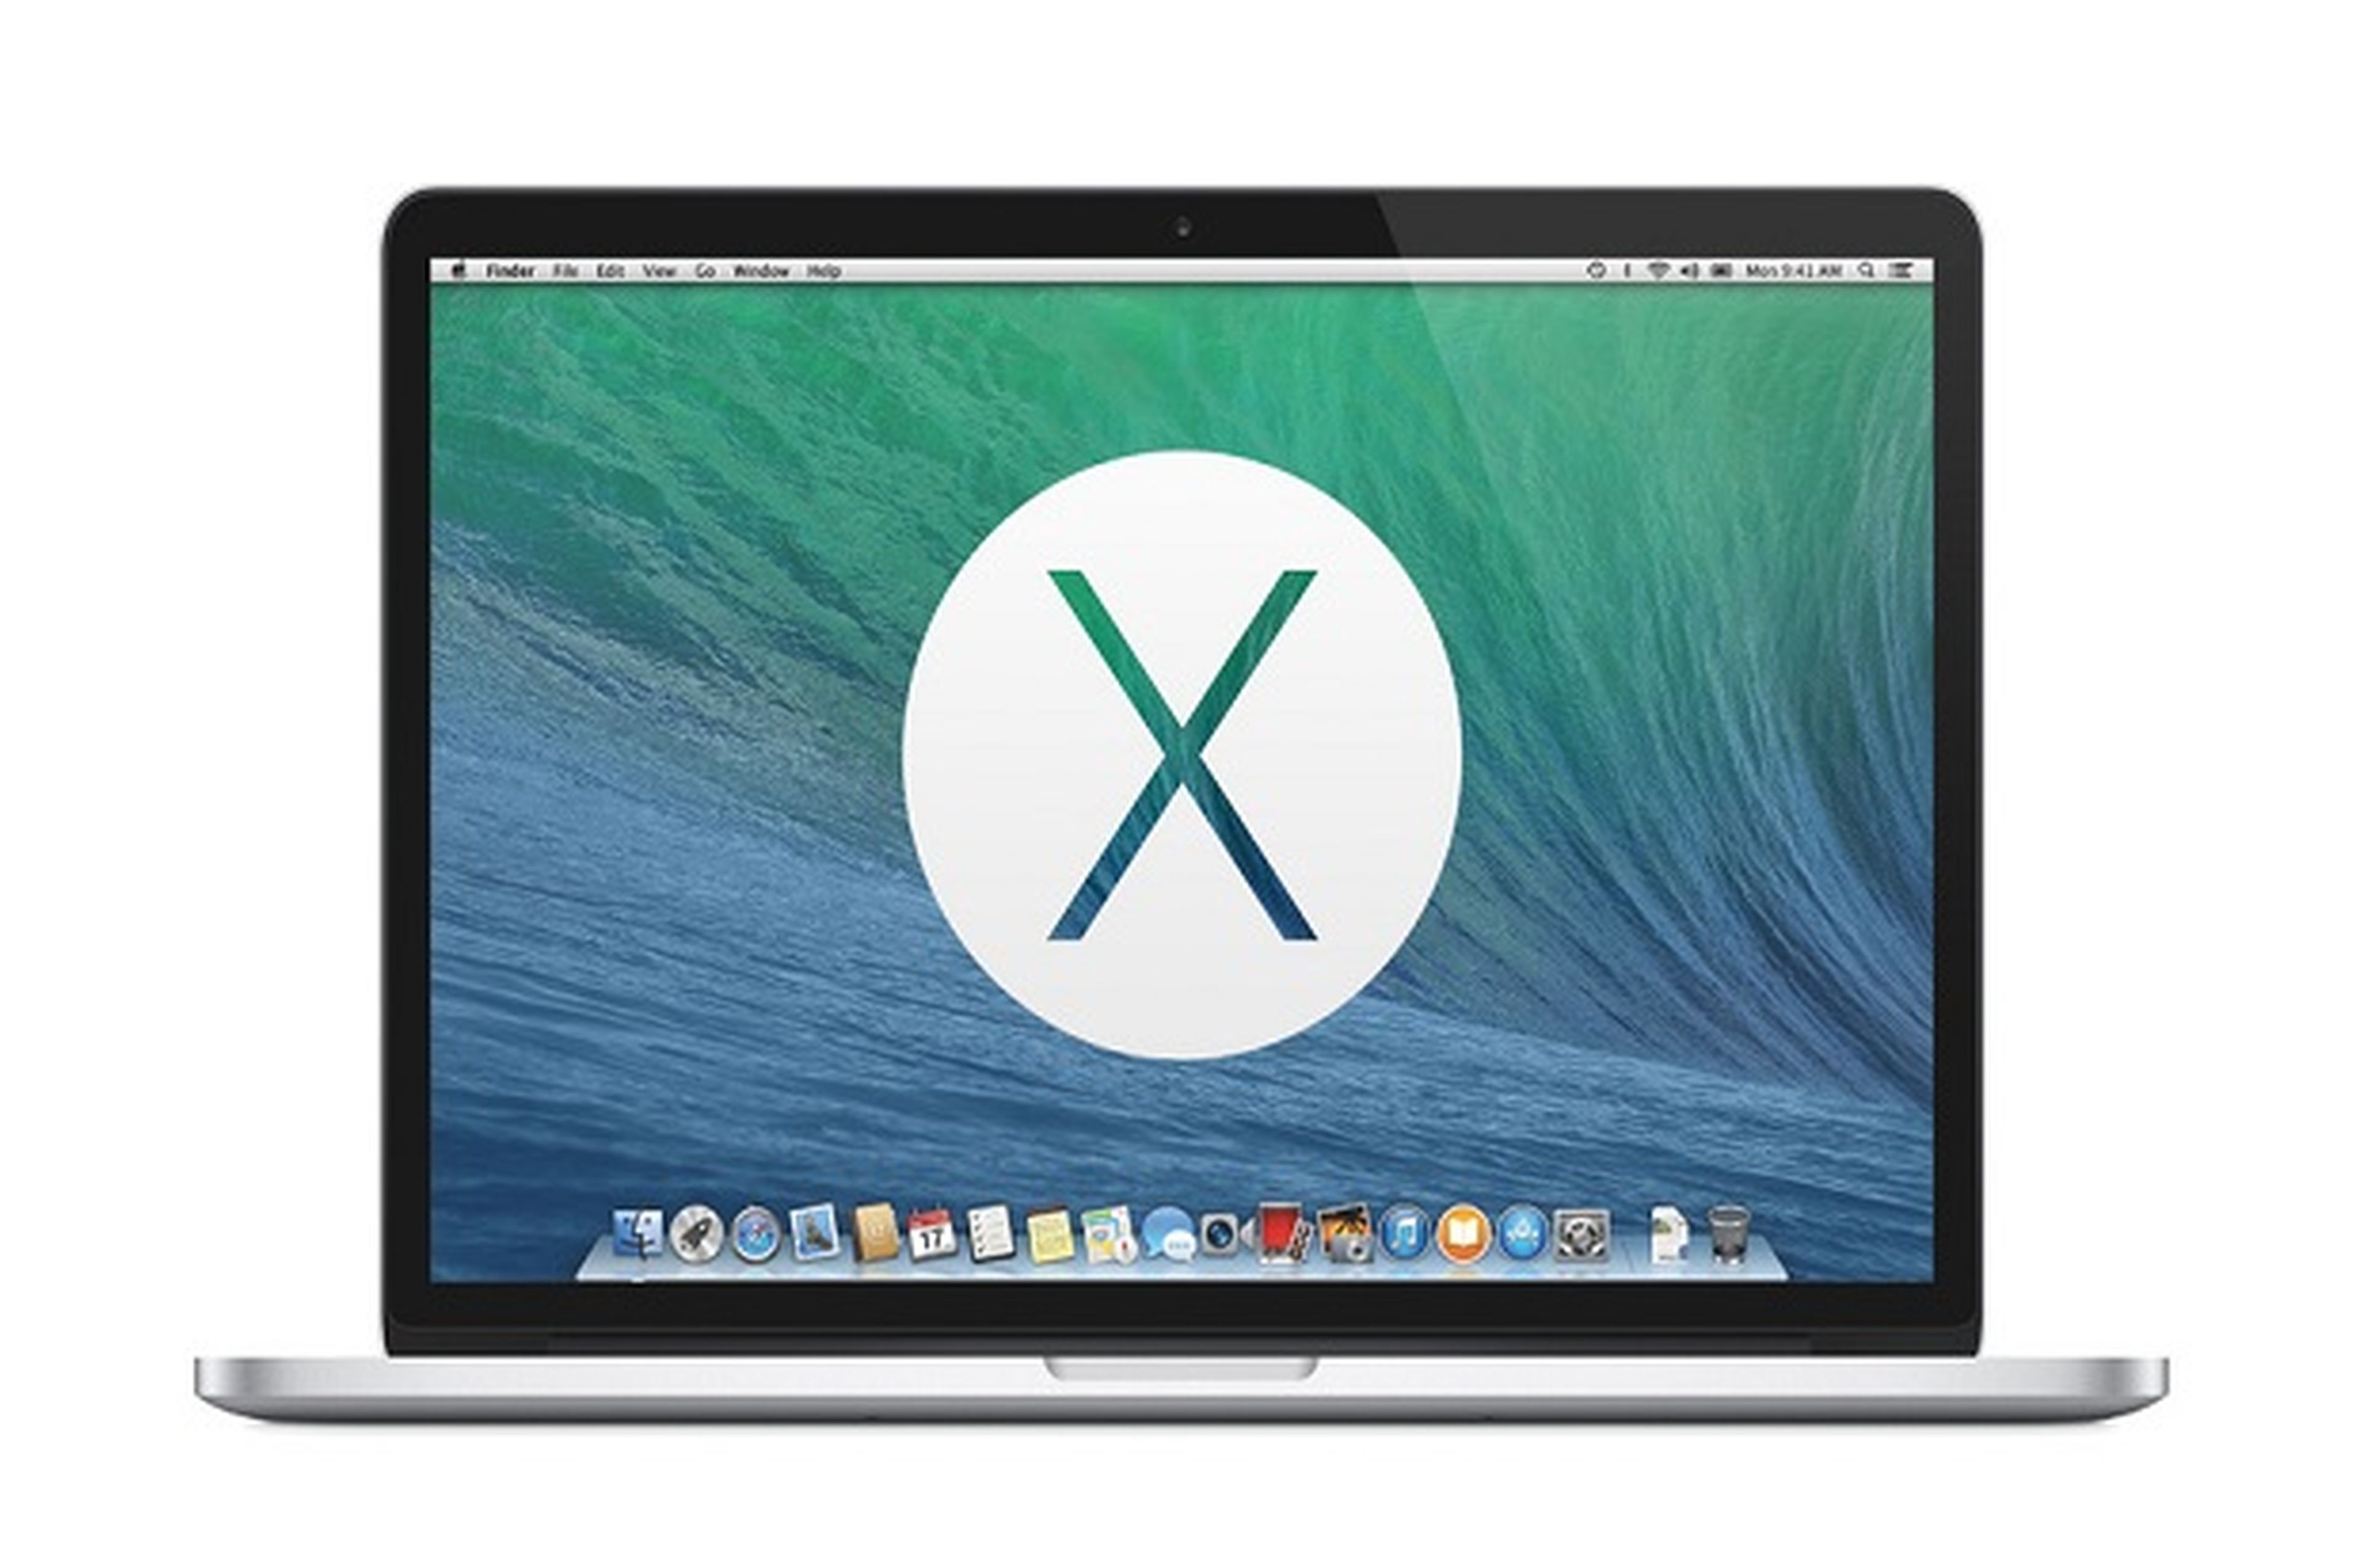 OS X Mavericks mas de 3 veces más popular que Mountain Lion